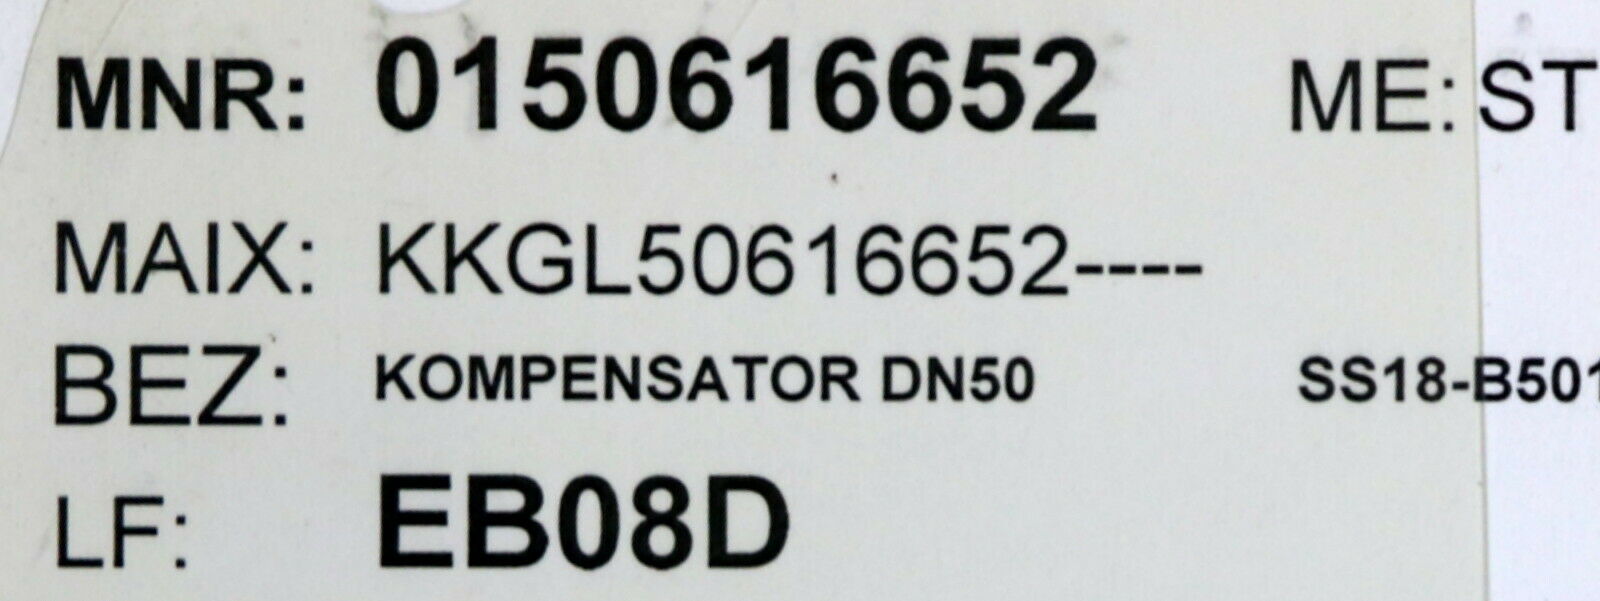 Kompensator DN50 PN10 nach DIN2501 Stahlflansche  Material 1.0038 STr 21784 CRx